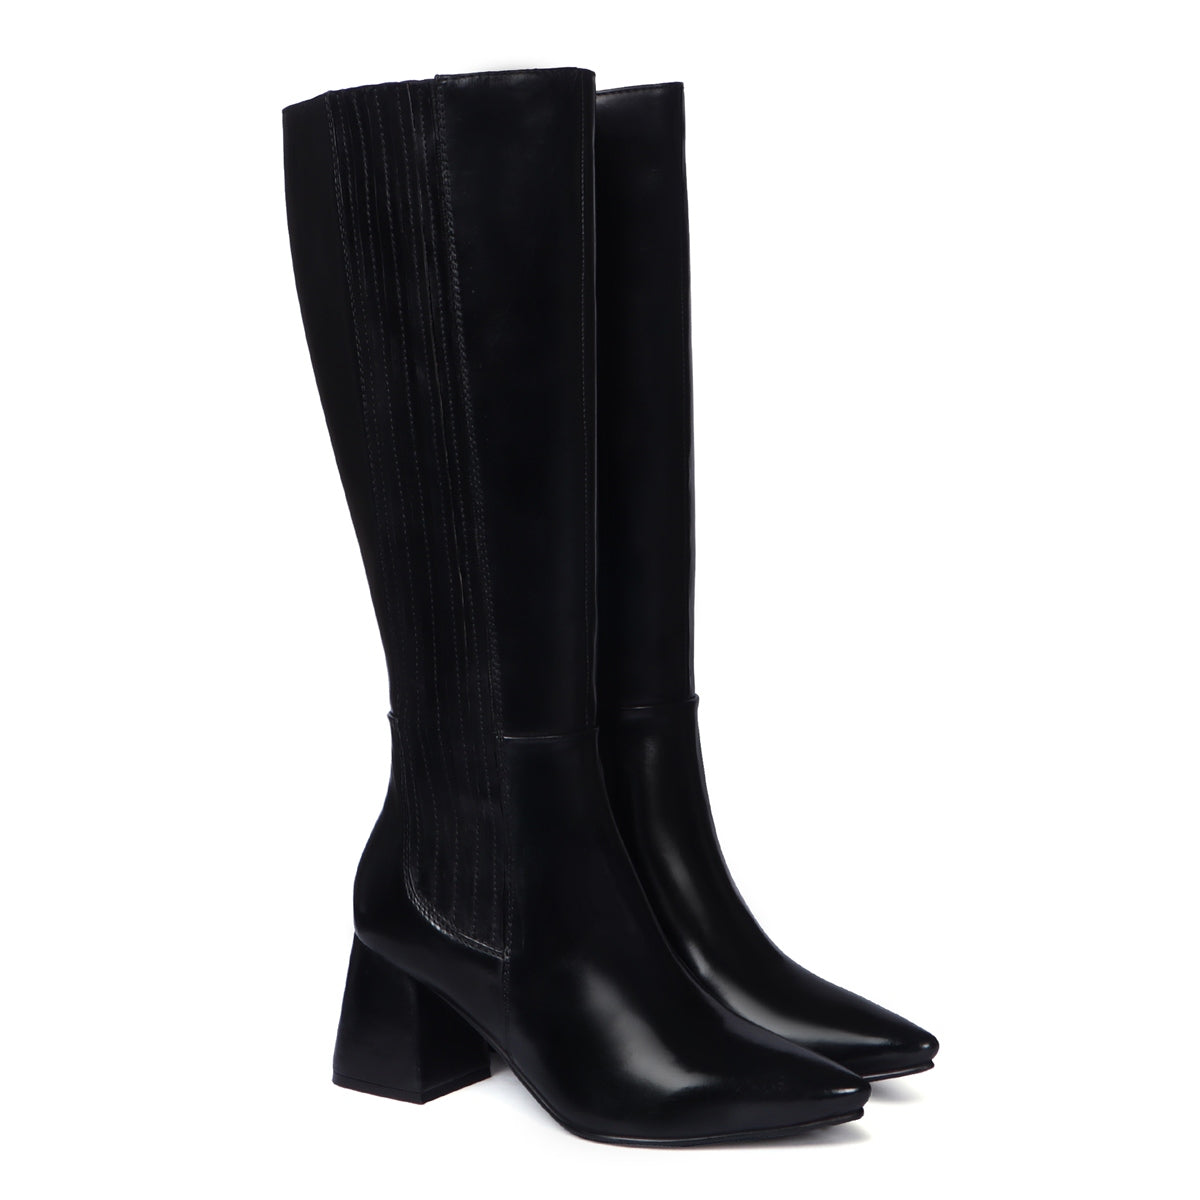 Blocked Heel Adjustable Elastic Pointed Toe Knee-Height Black Leather Ladies Boots By Brune & Barerskin